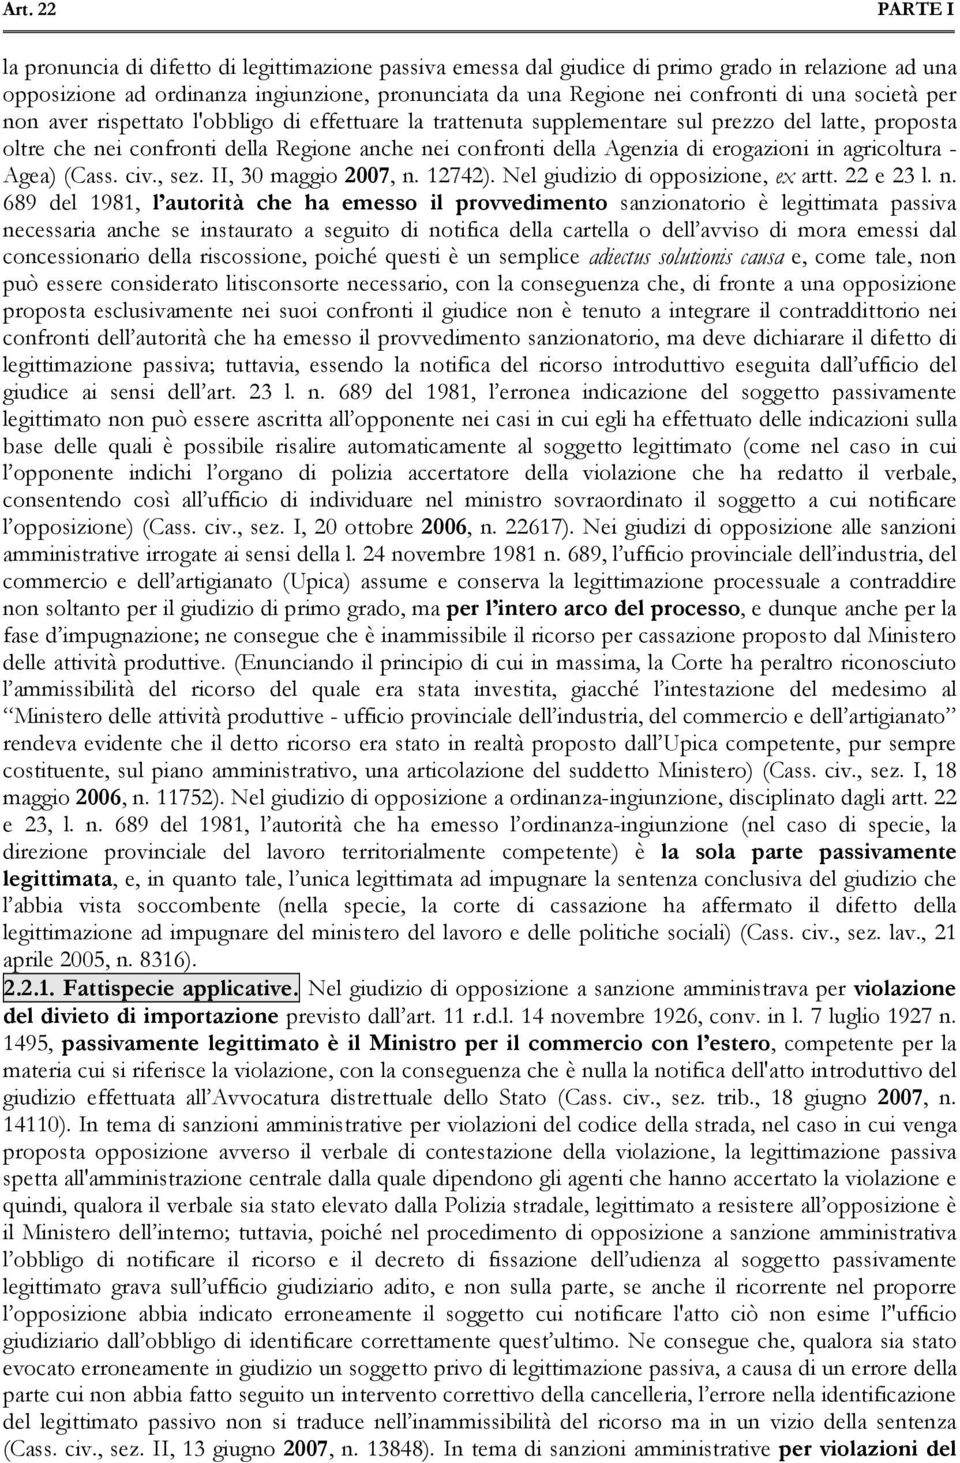 erogazioni in agricoltura - Agea) (Cass. civ., sez. II, 30 maggio 2007, n.